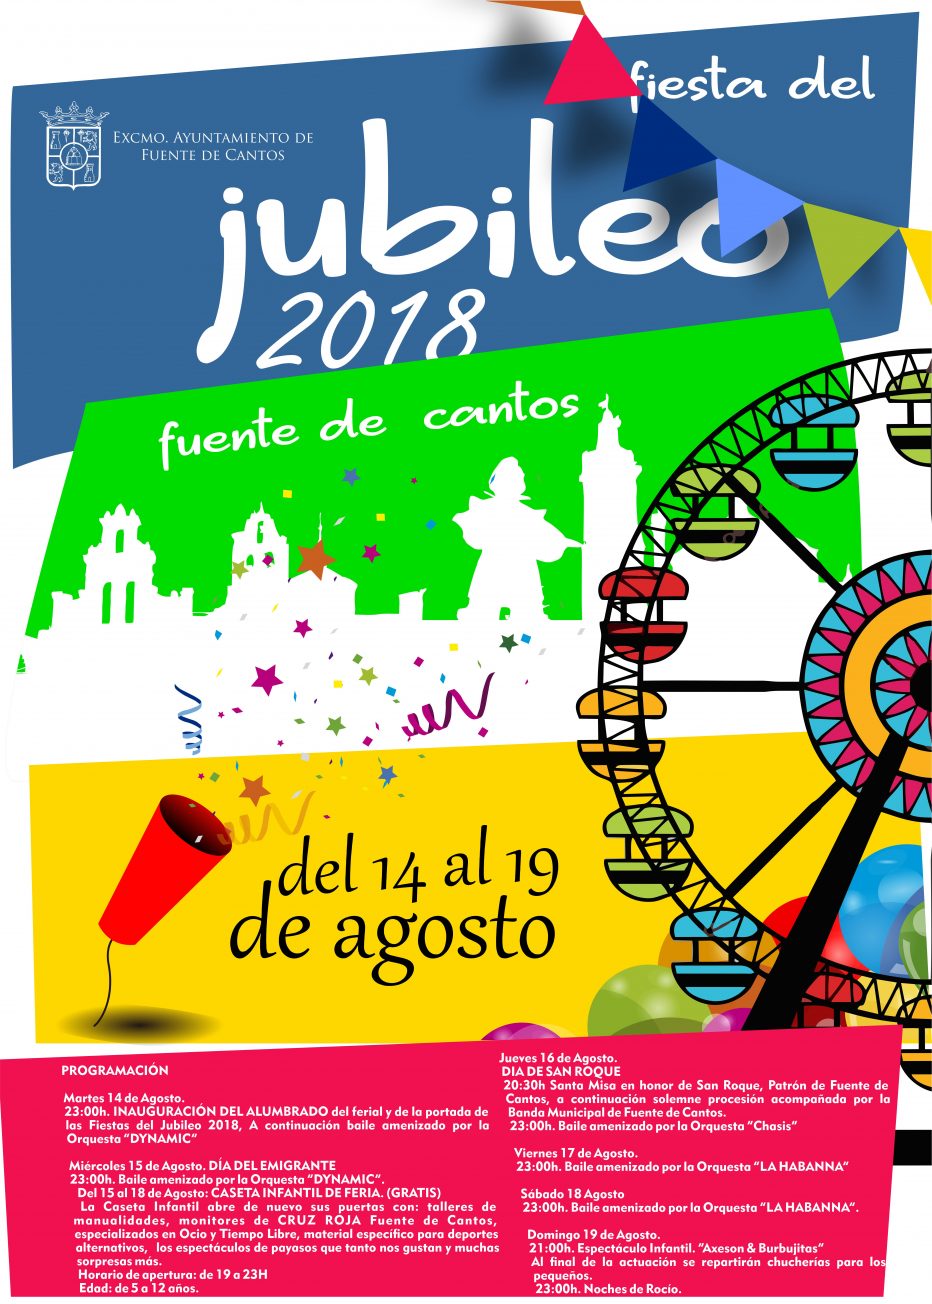 Feria de AGOSTO. Fiesta del JUBILEO